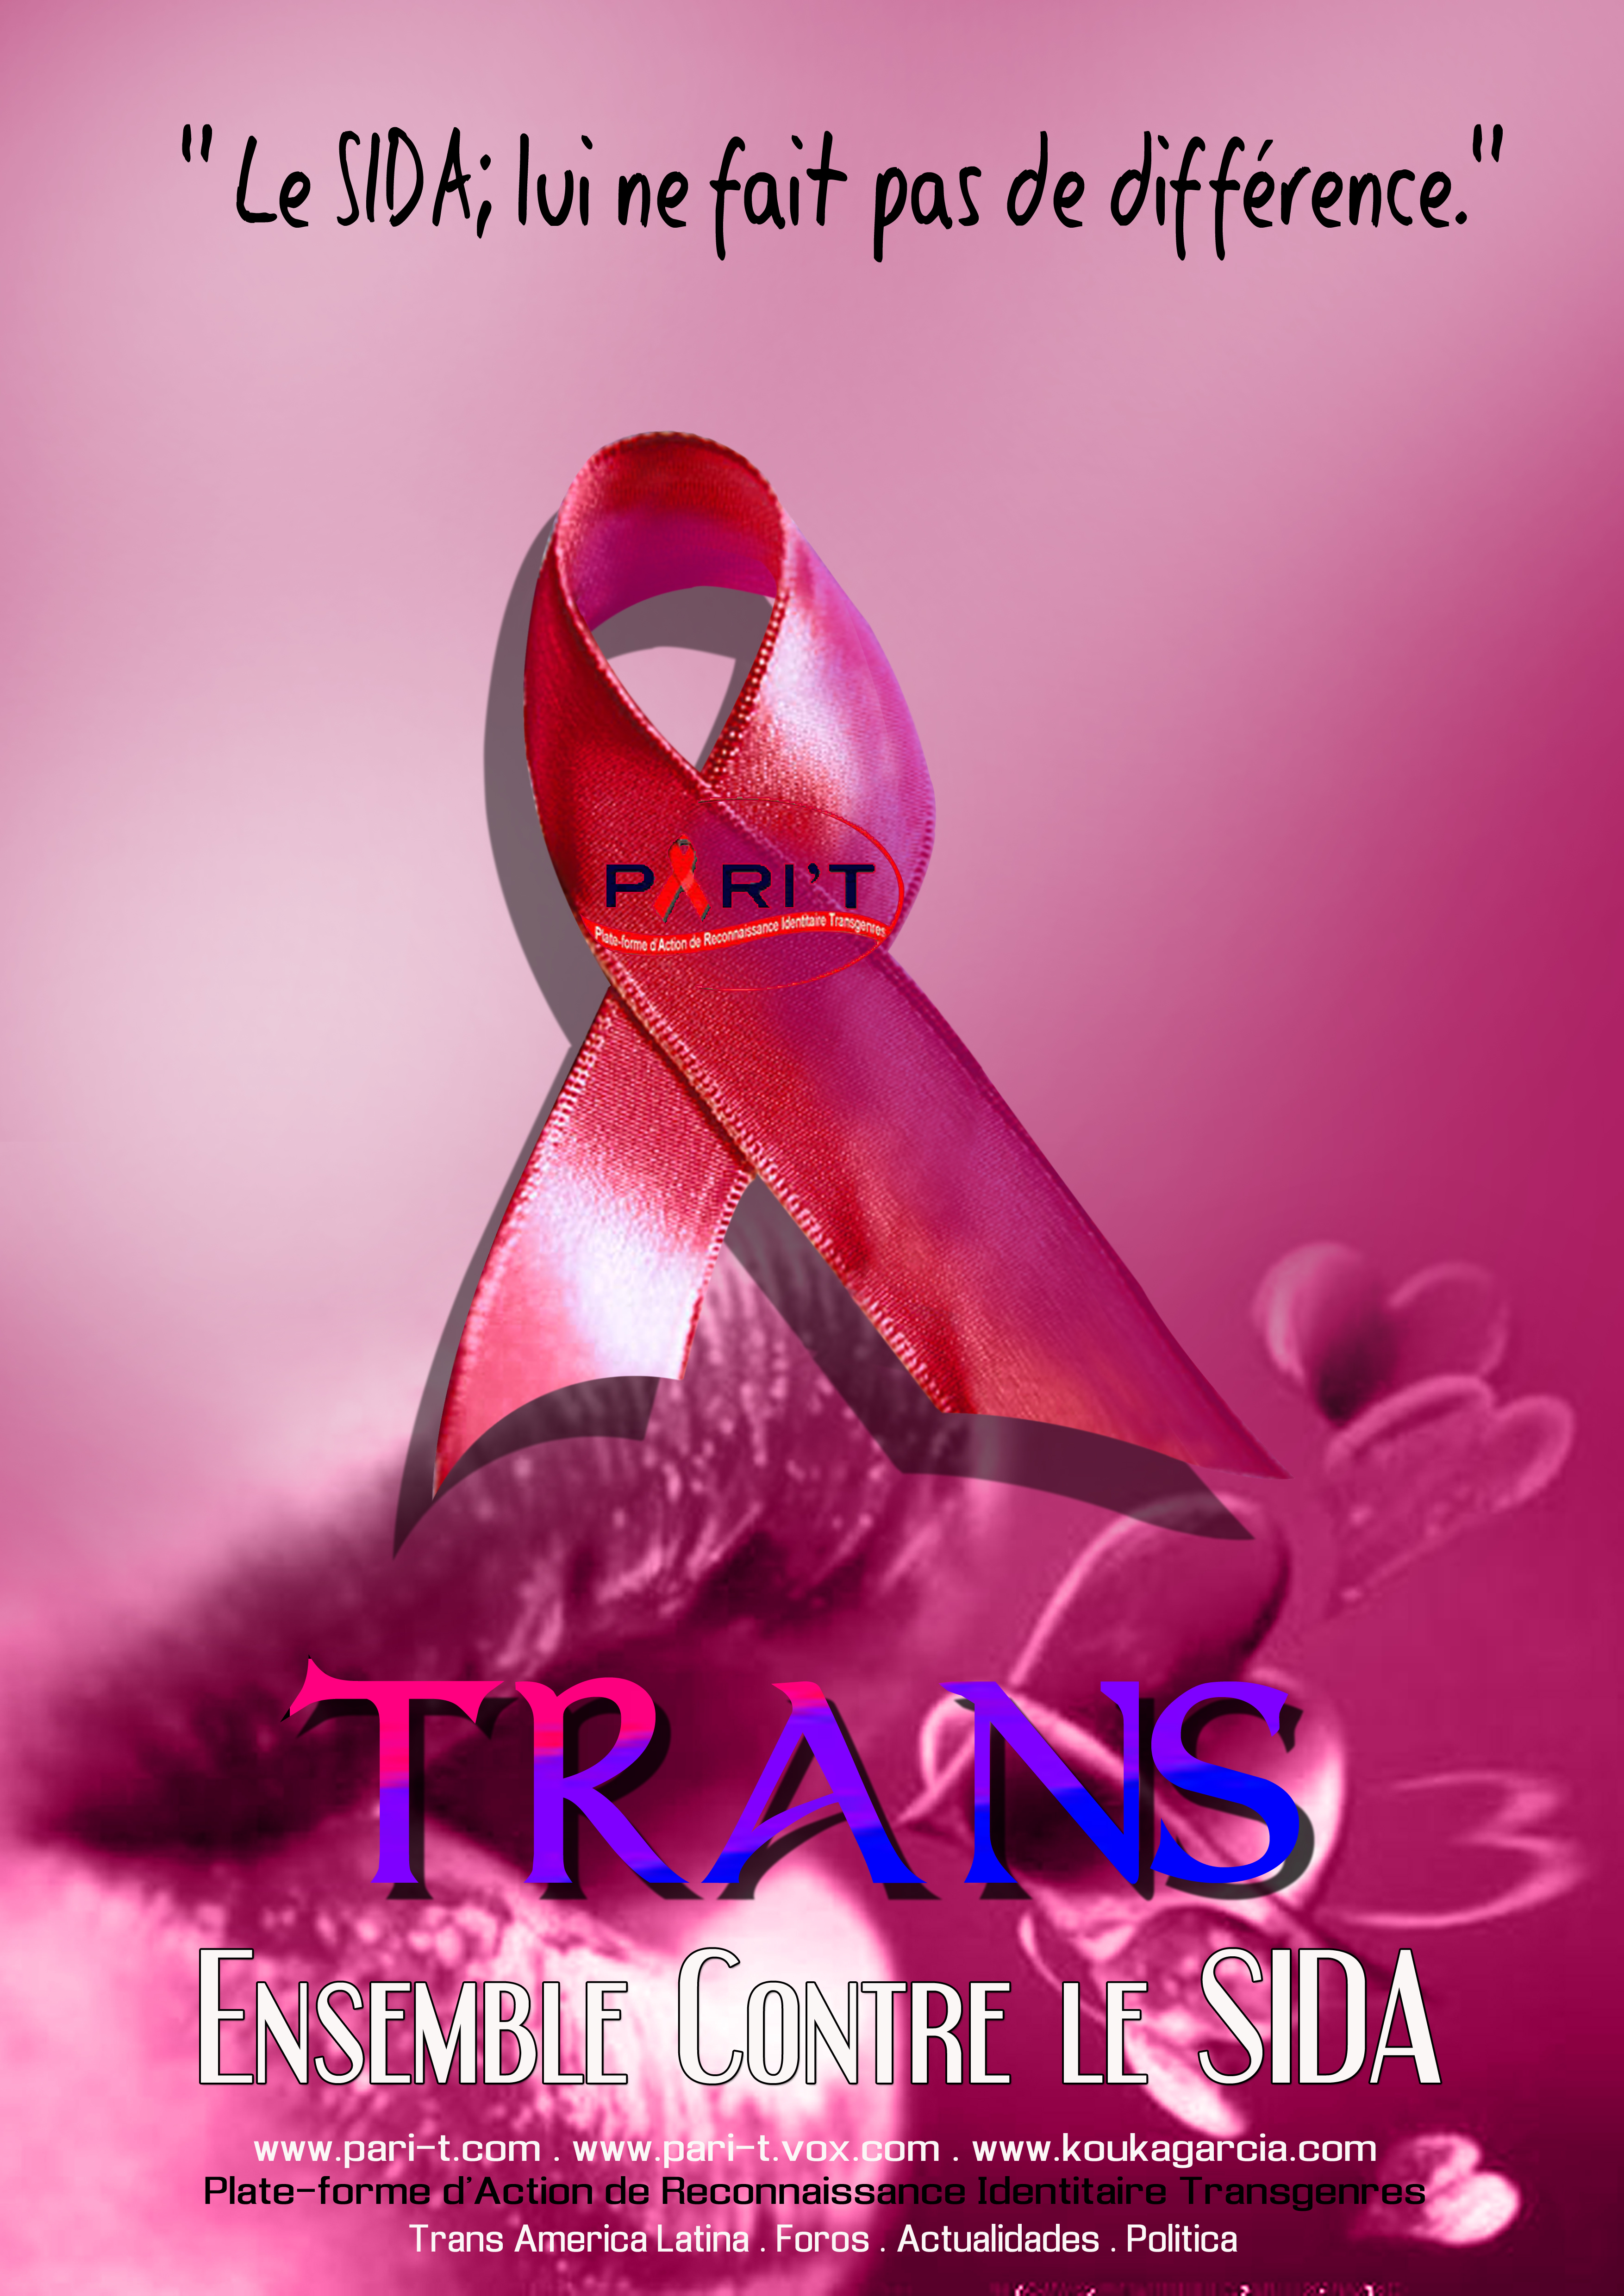 SIDA-Poster PARI-T-Trans ensemble contre le sida 